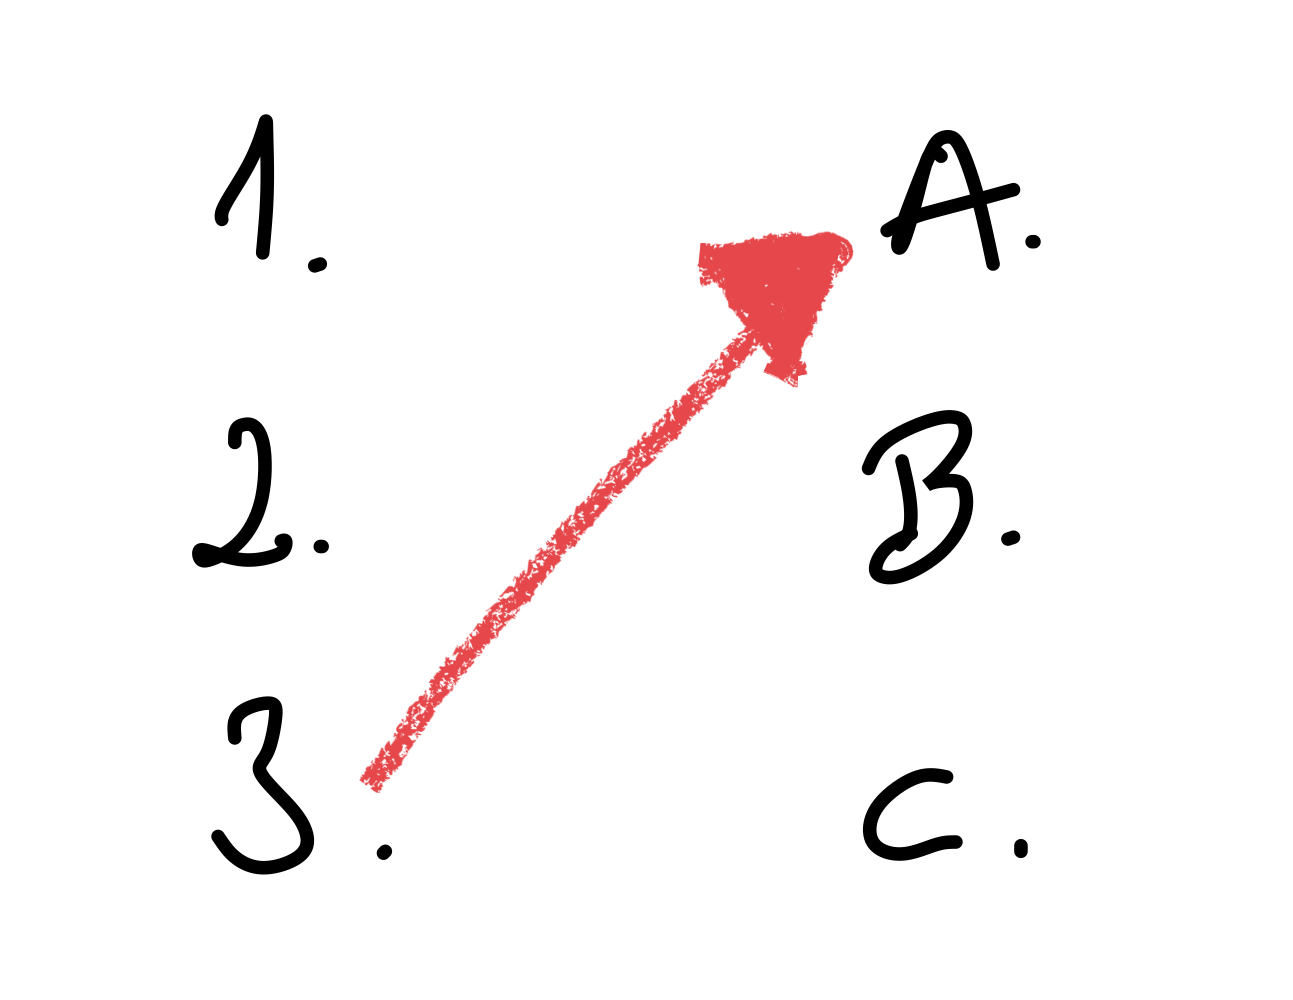 Pictograma con letras y número y unido con una flecha.